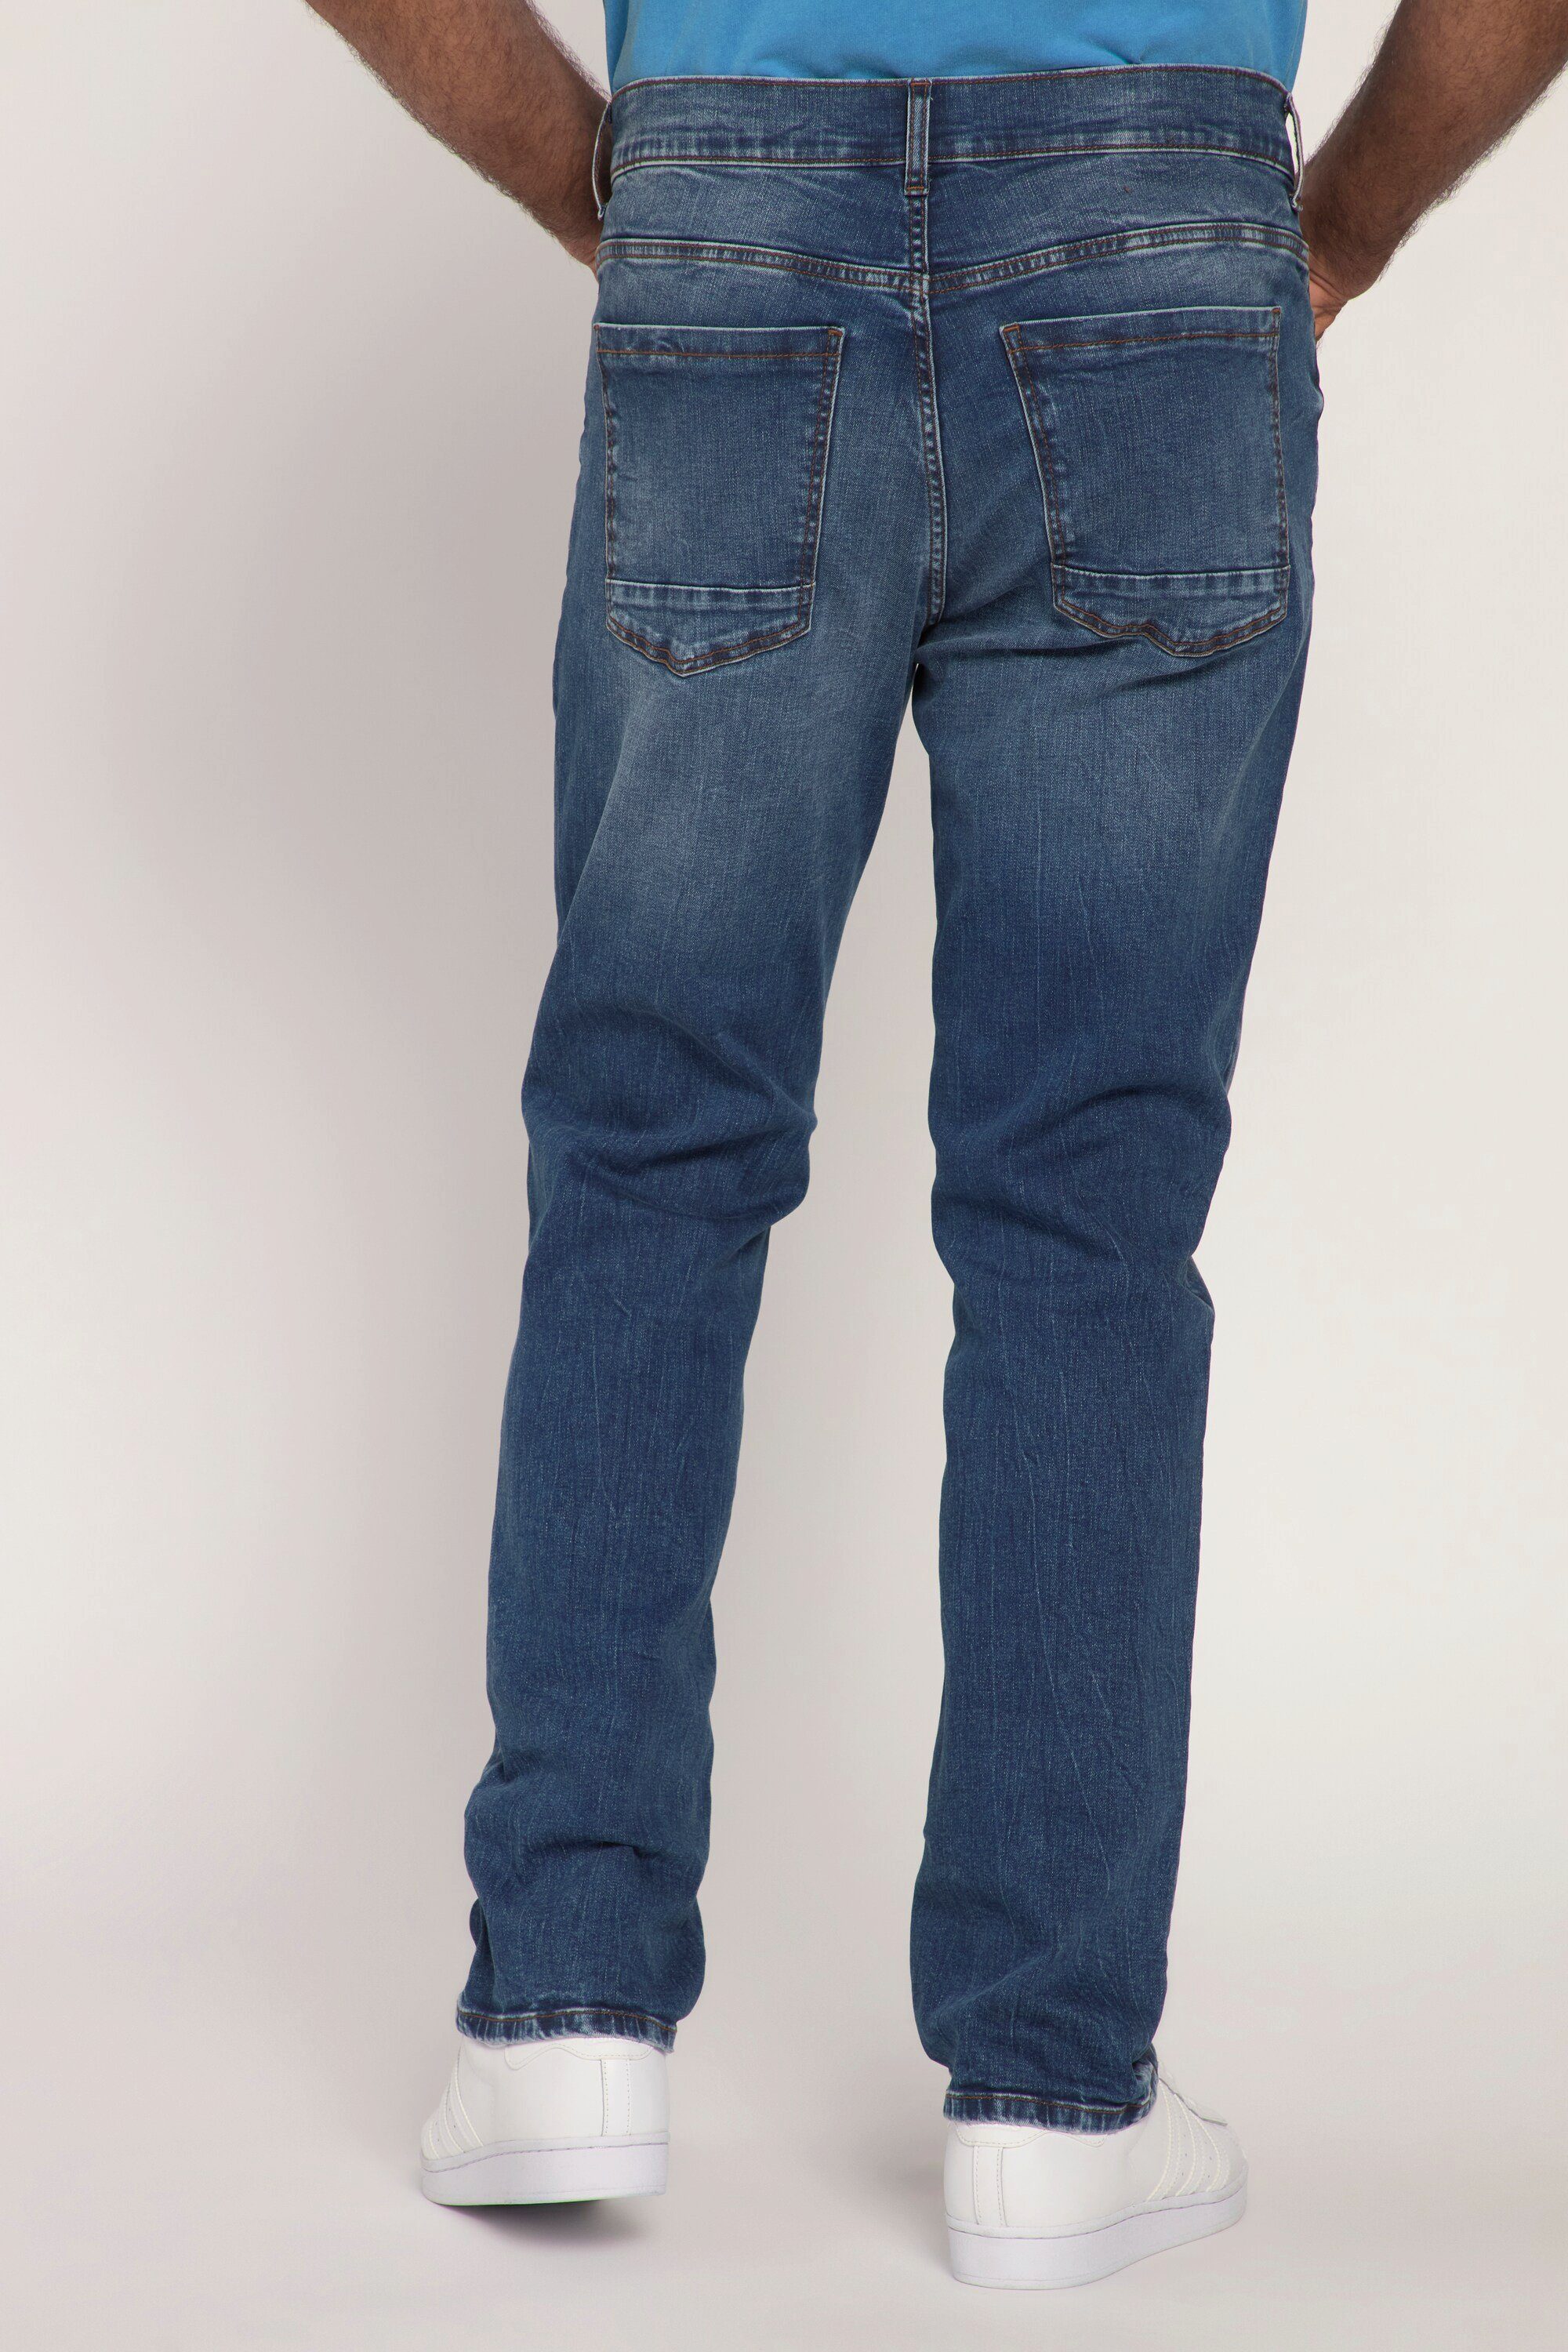 denim Jeans 5-Pocket-Jeans blue FLEXNAMIC® Fit Regular Denim JP1880 Vintage Look